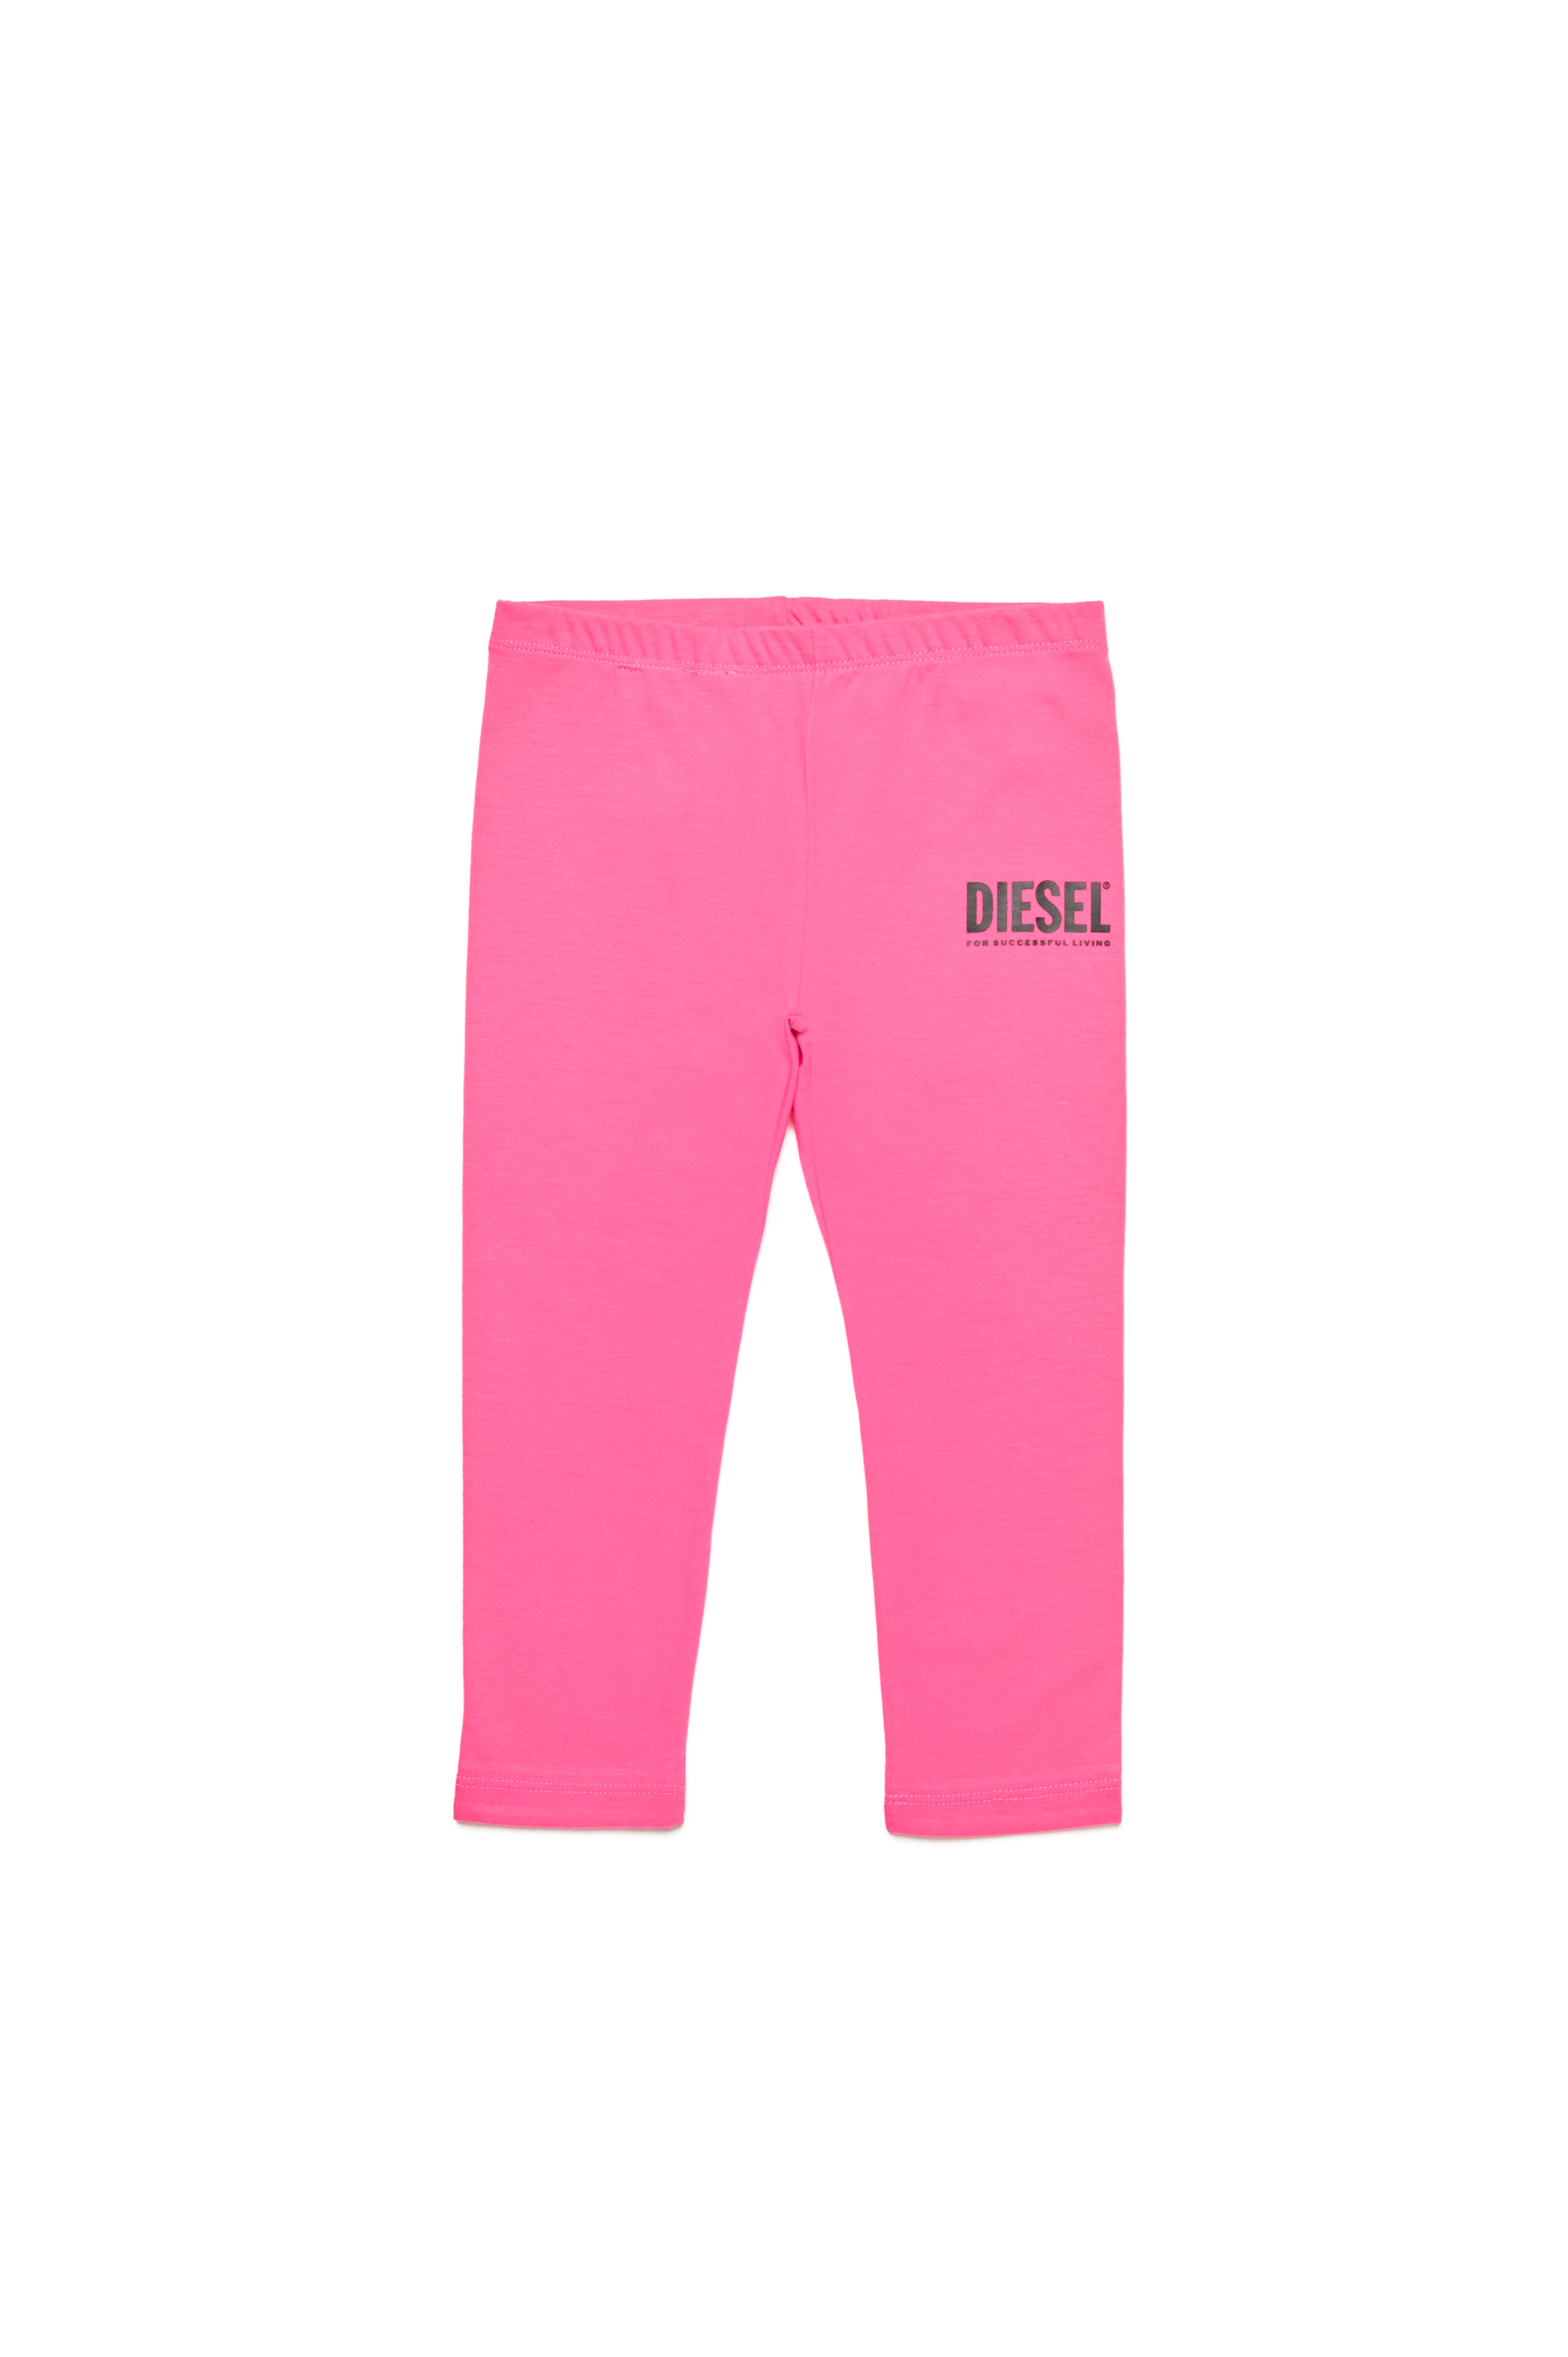 Diesel - Pantalon en coton avec logo imprimé - Pantalons - Femme - Rose